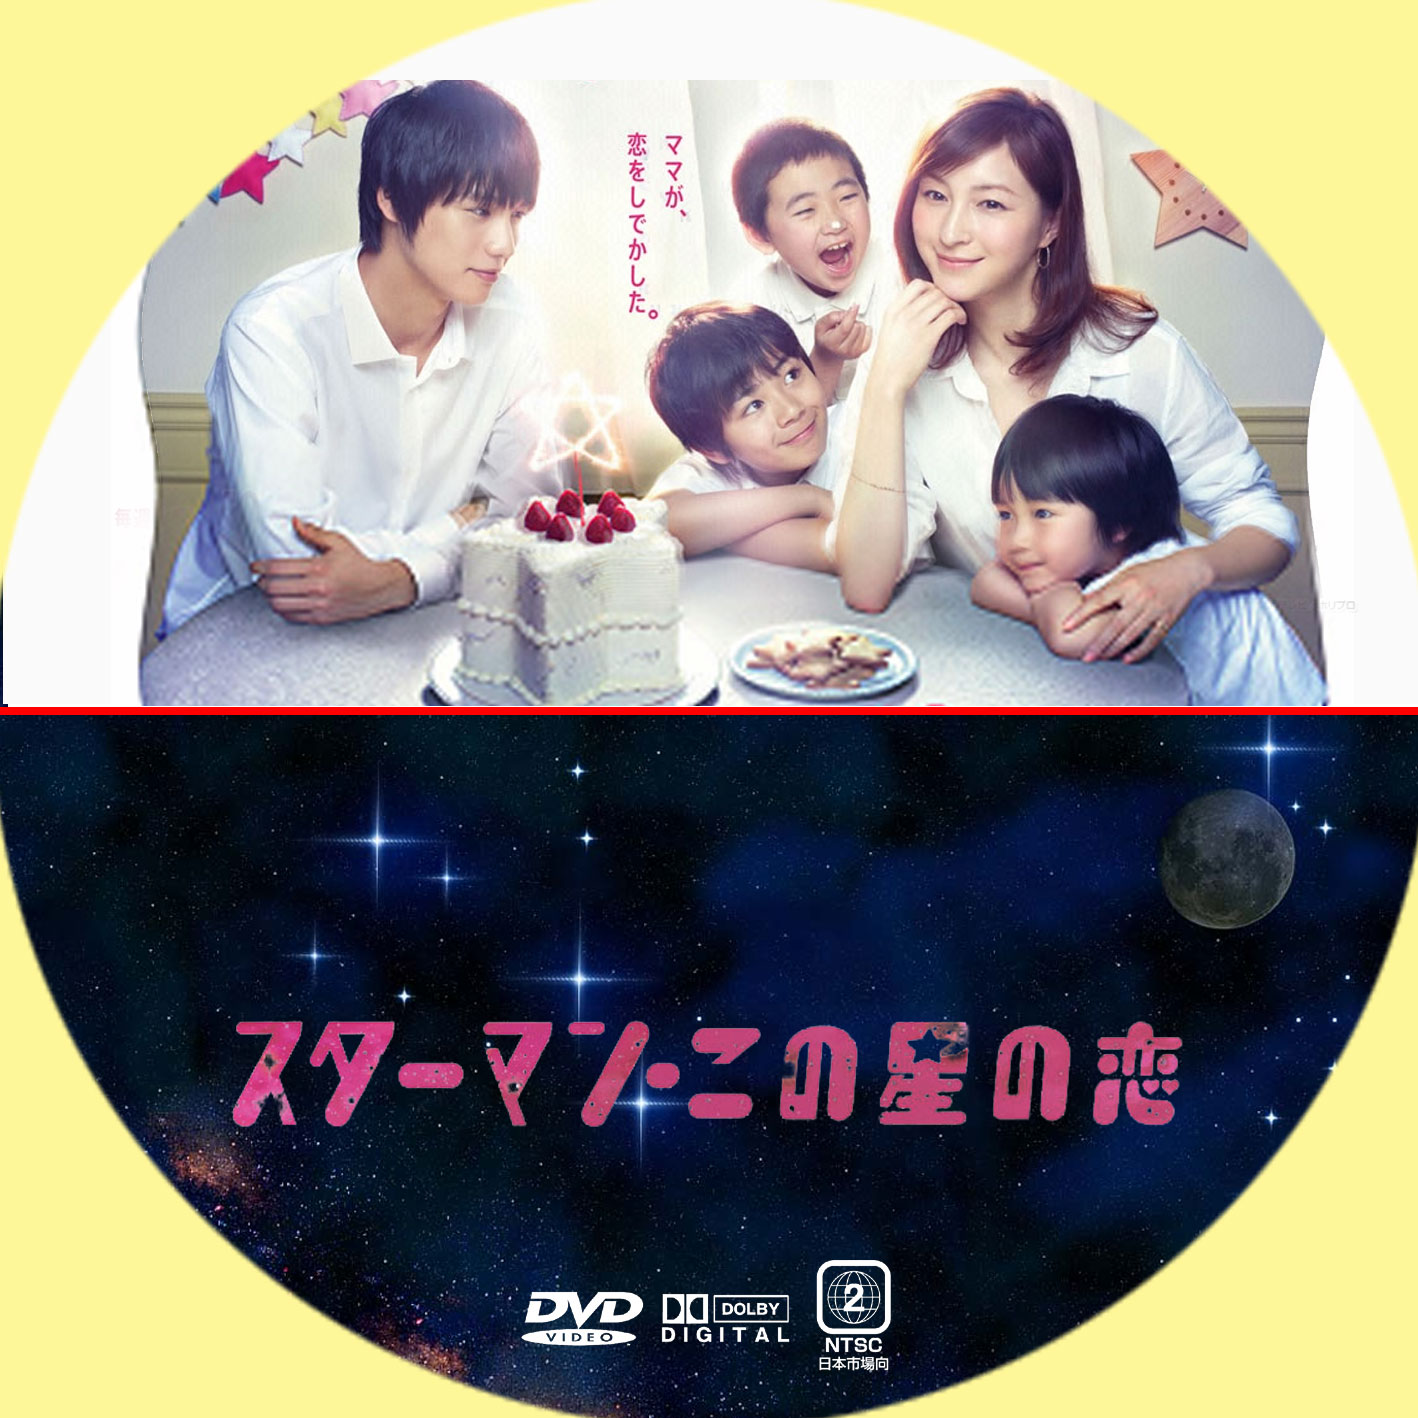 スターマン・この星の恋 DVD-BOX rdzdsi3 www.krzysztofbialy.com